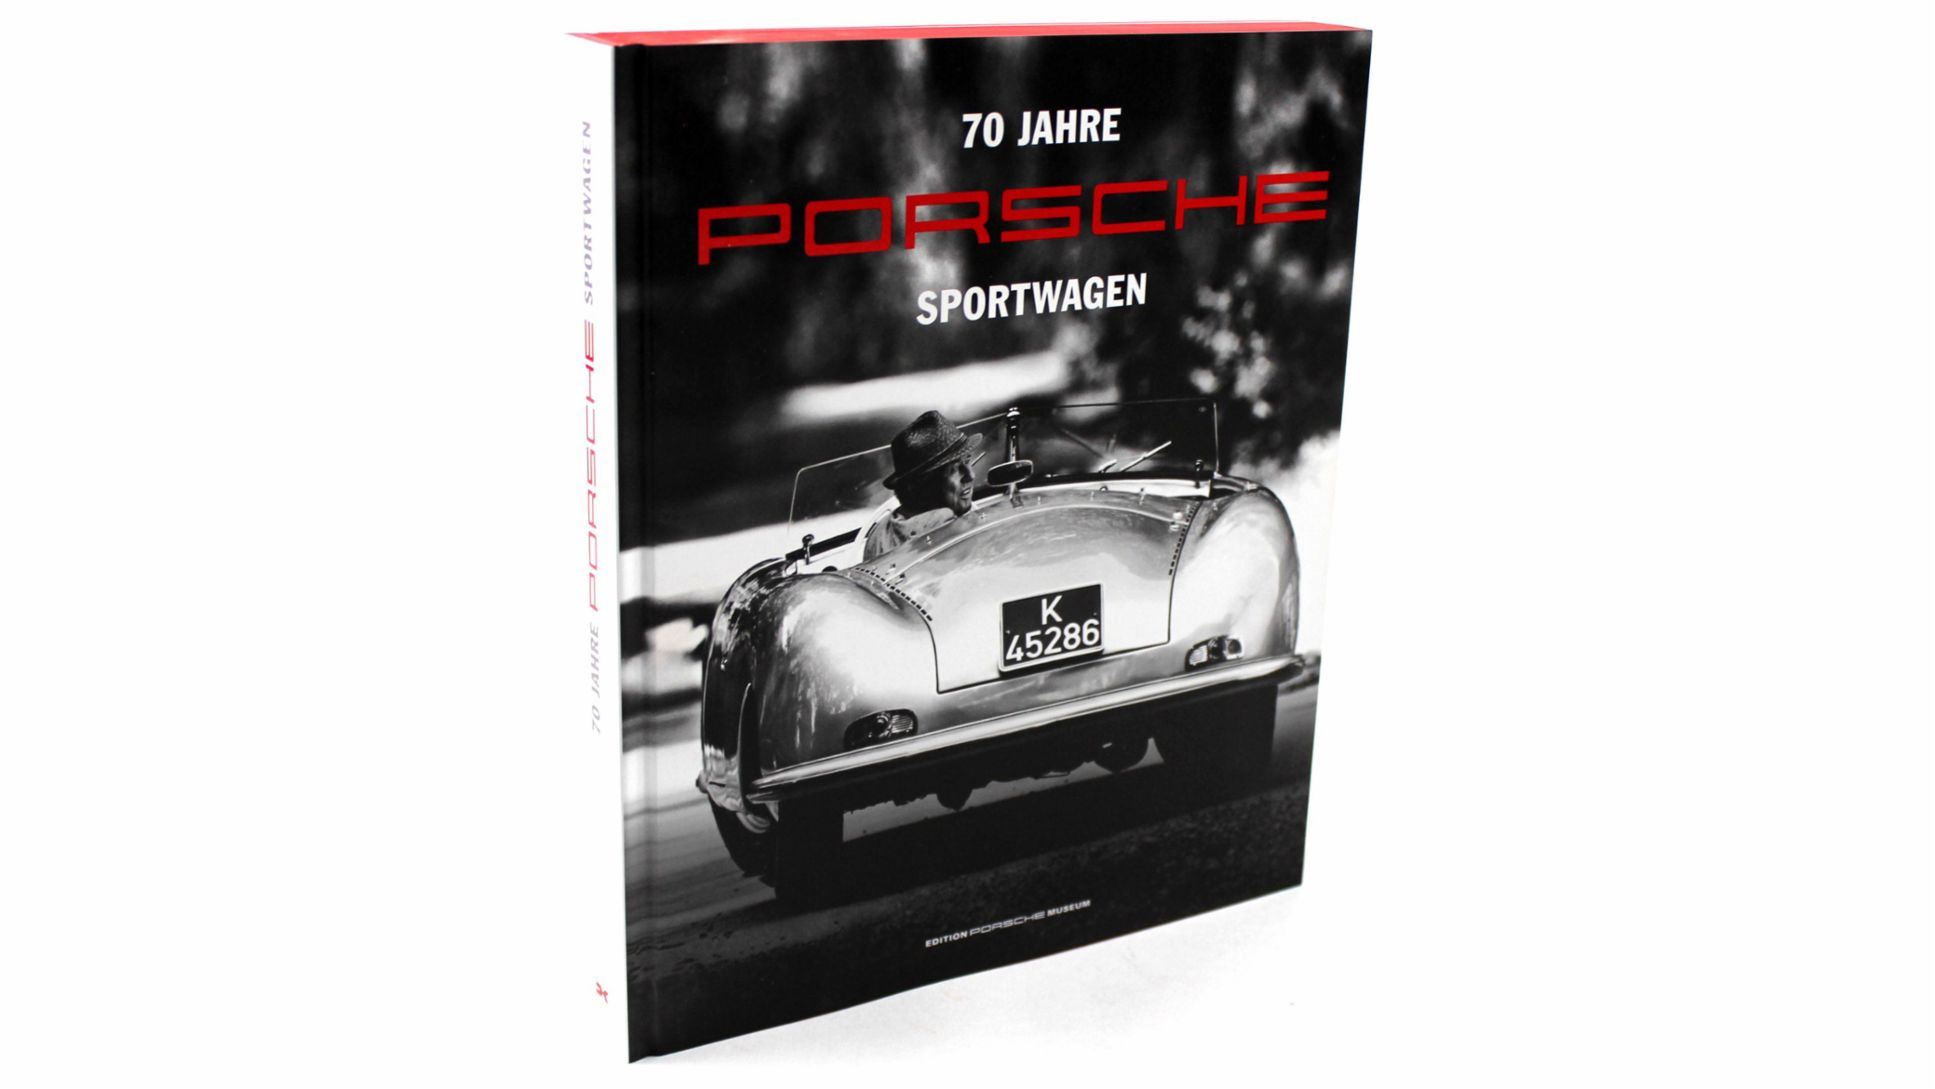 70 Jahre Porsche Sportwagen, Edition Porsche Museum, 2018, Porsche AG